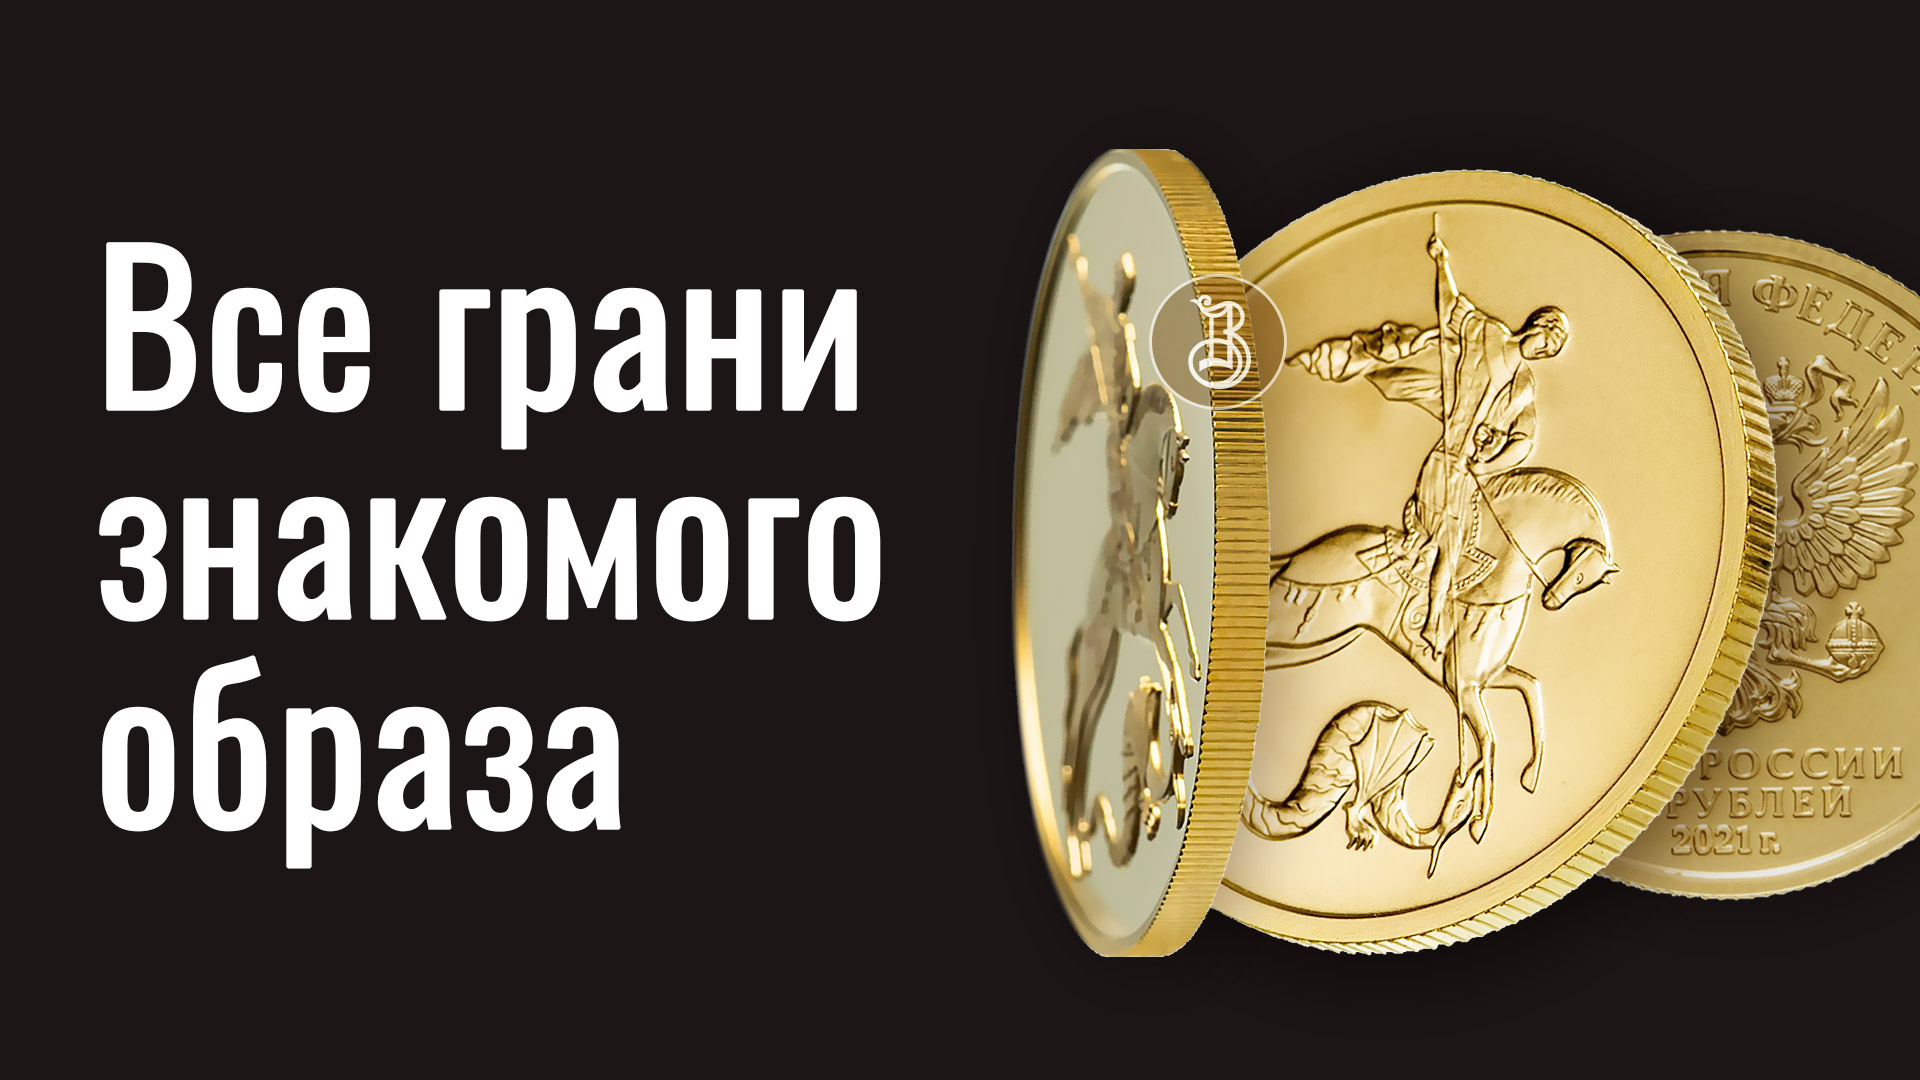 Держава золото монеты цена. Золото державы инвестиционные монеты. Золотые часы и монеты.